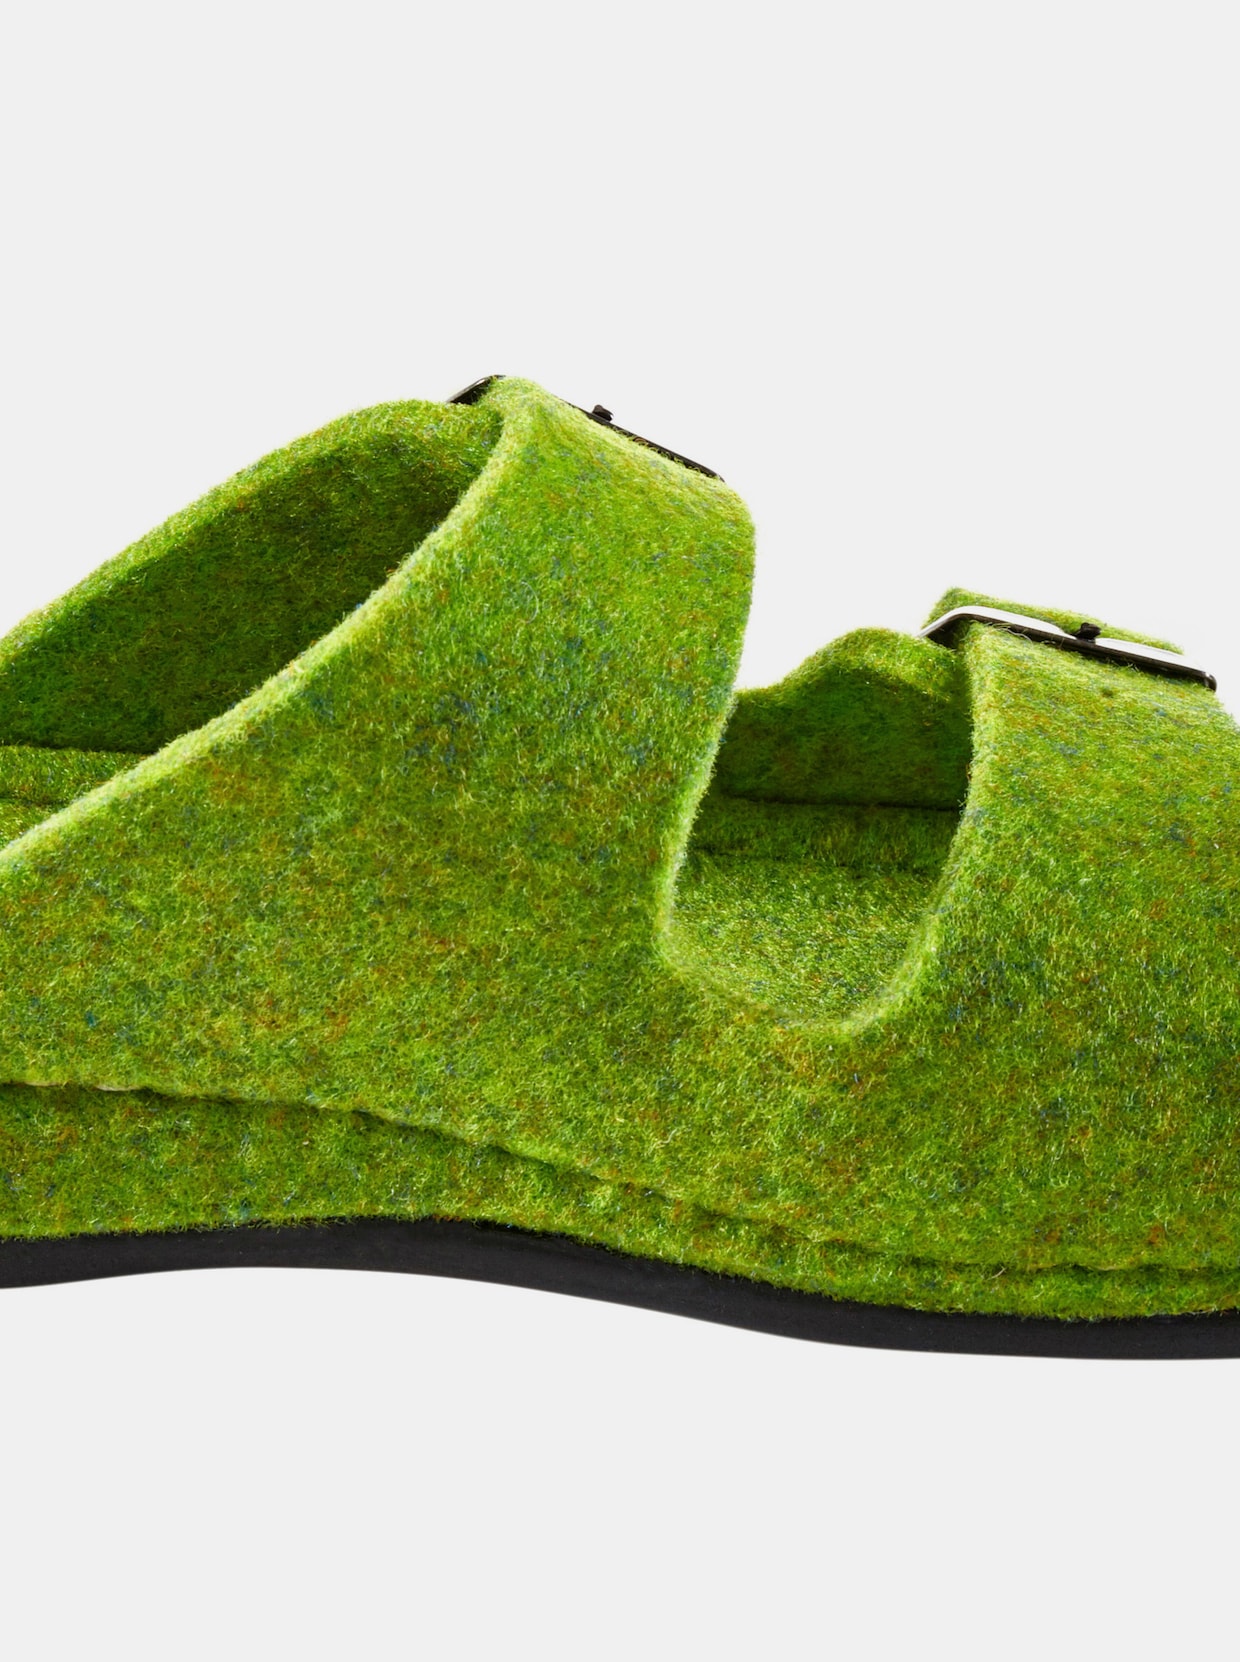 Dr. Feet Hausschuhe - grün